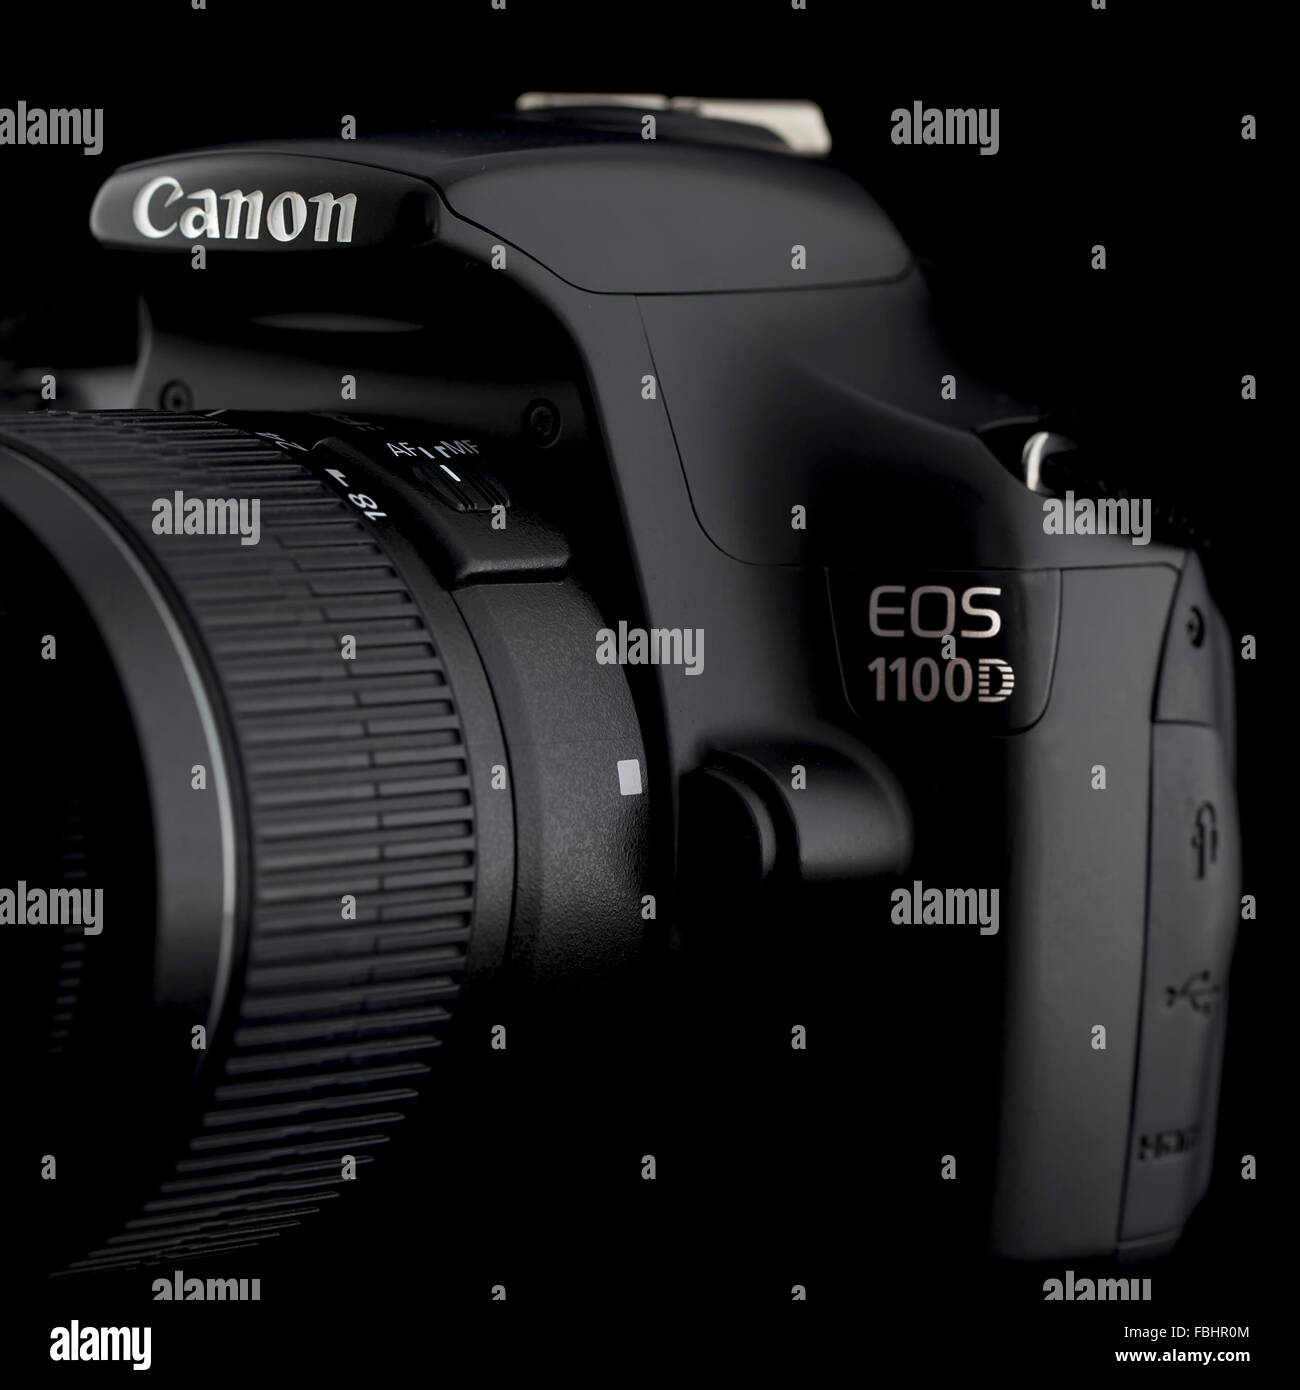 1100 DSLR Camera on a Black Background Stock Photo - Alamy